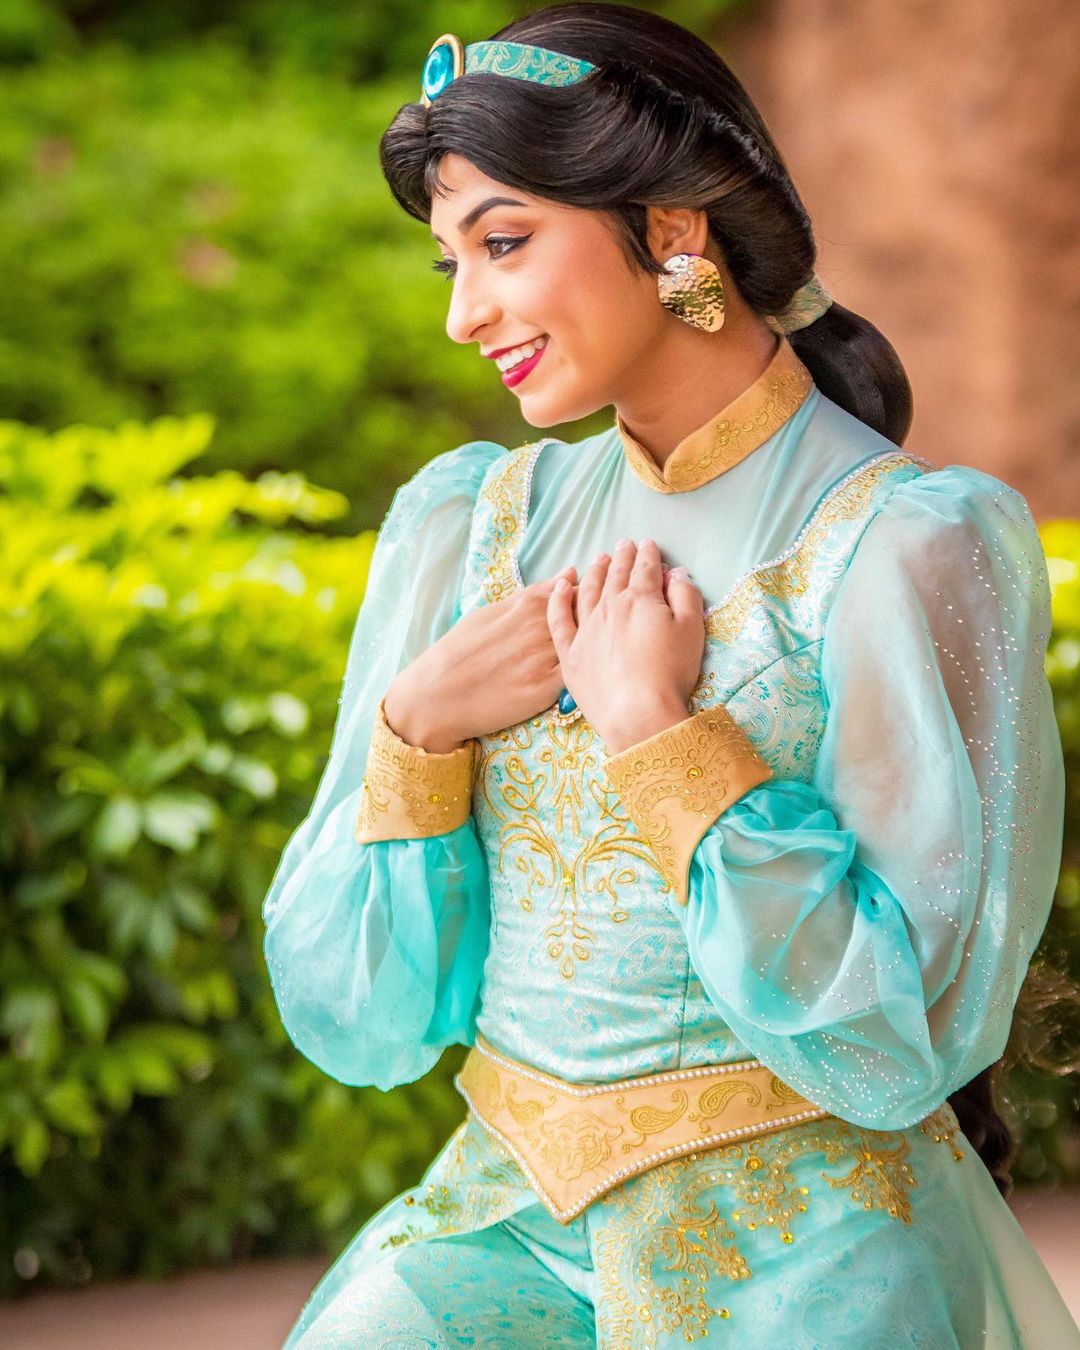 Prinzessin Jasmine im Marokko-Pavillon in Epcot für Fotos